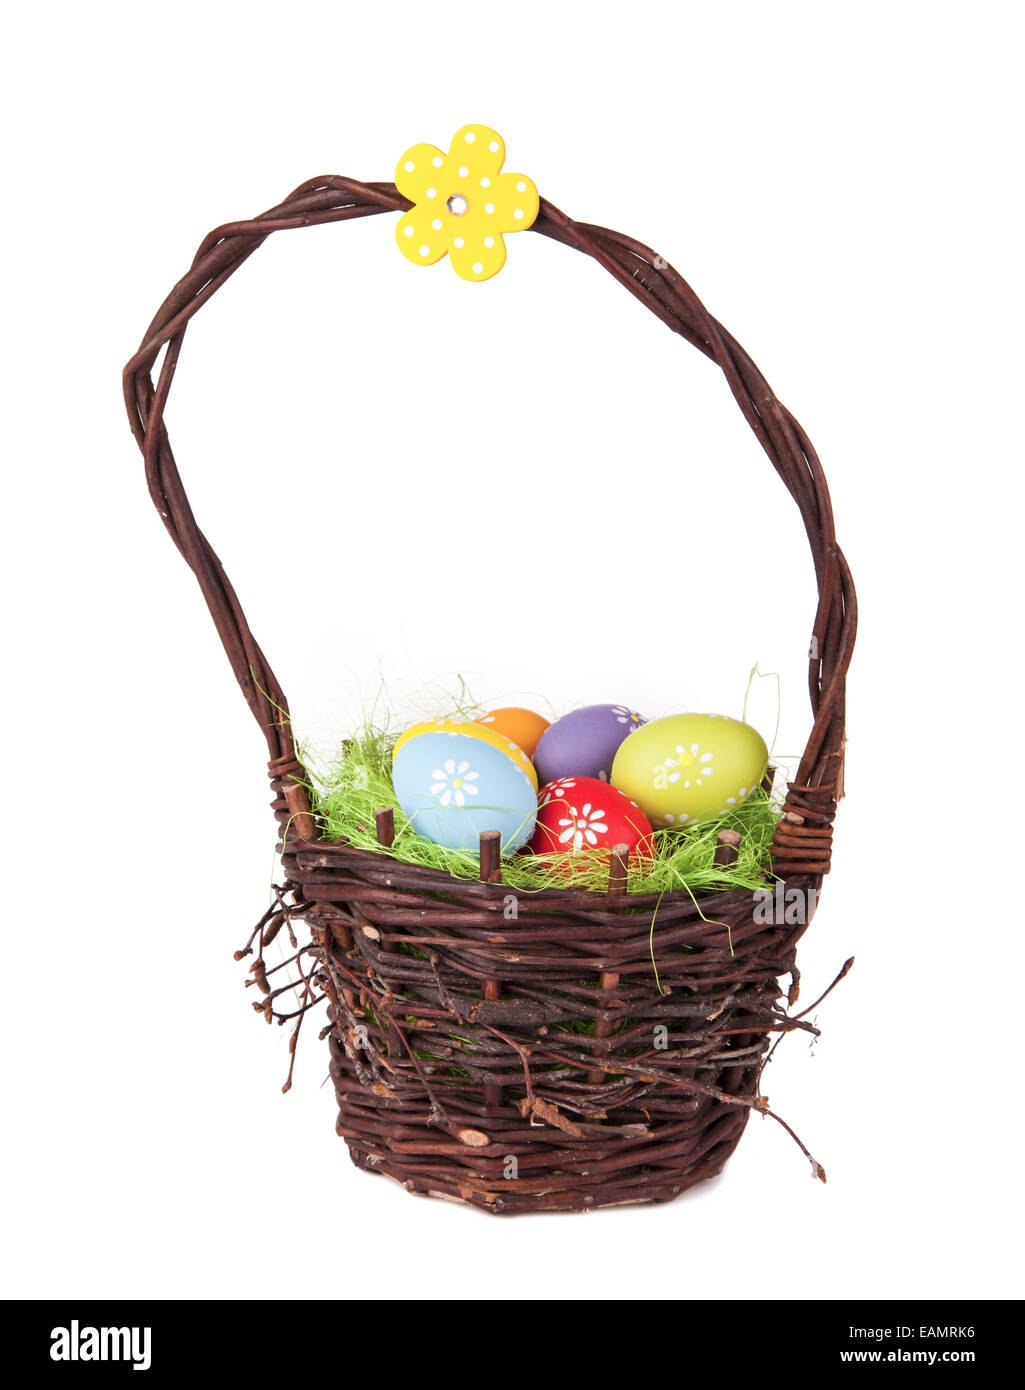 Panier de Pâques avec les oeufs colorés, isolé sur fond blanc Banque D'Images